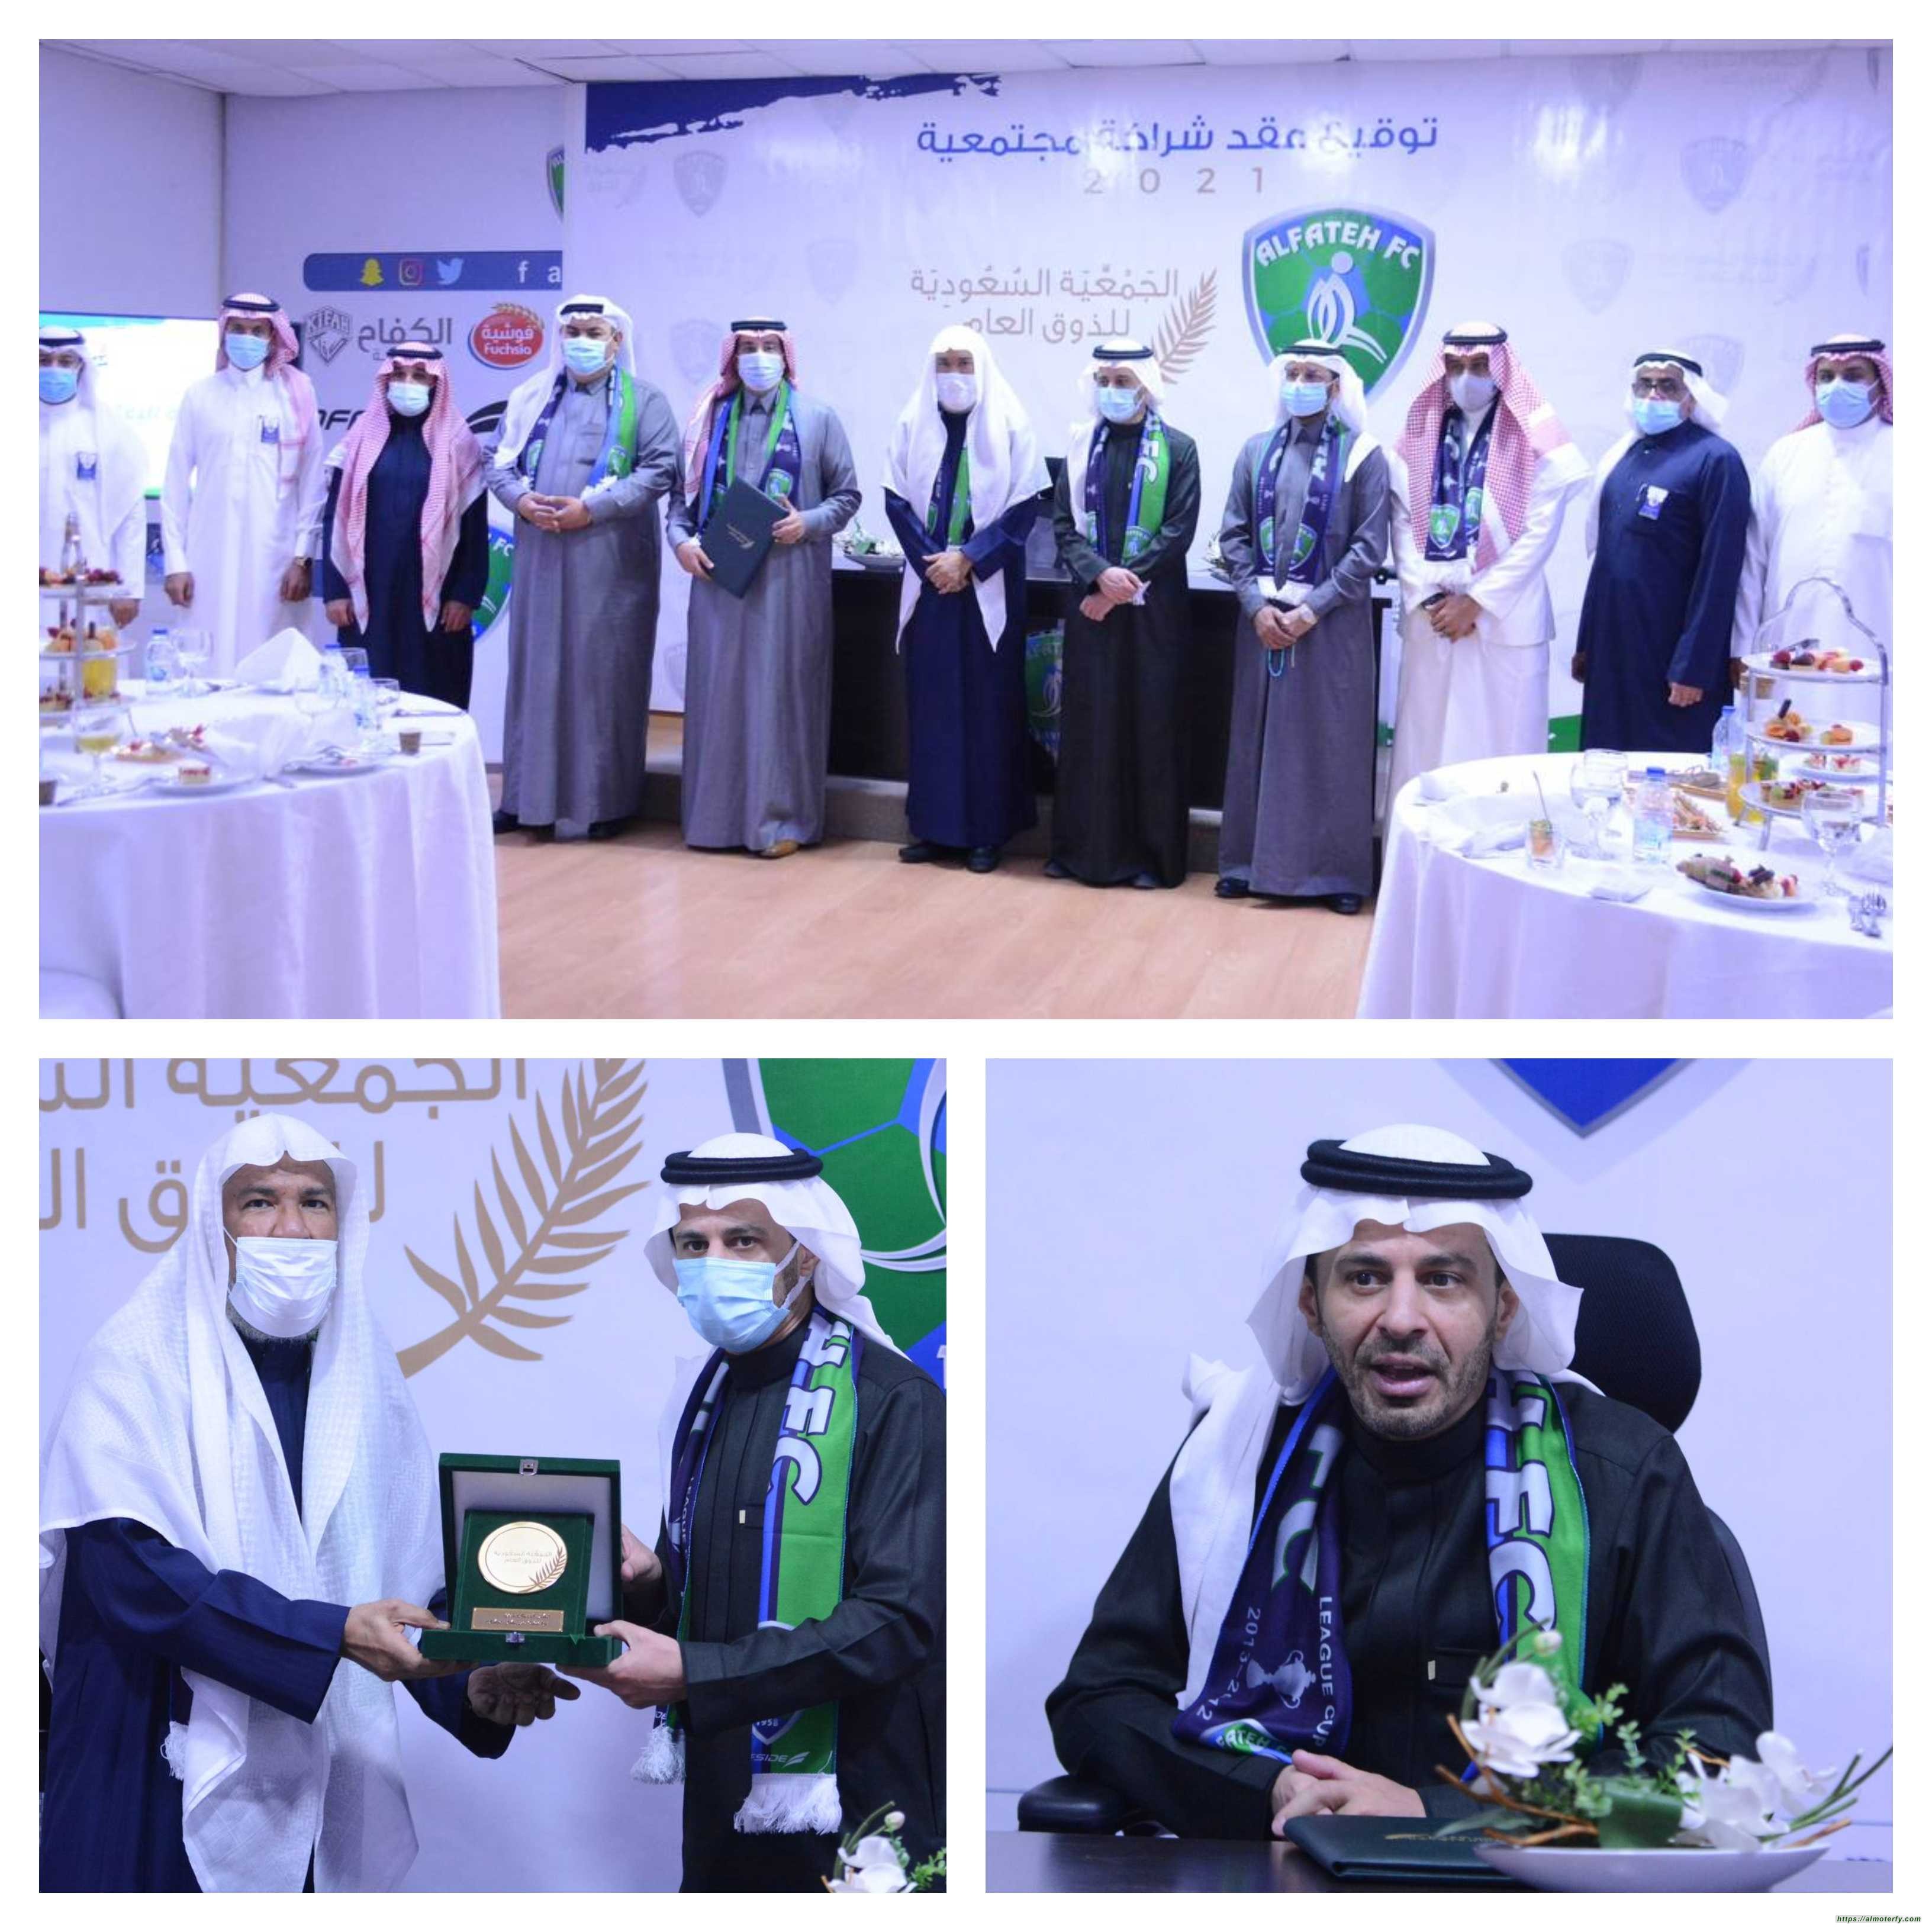 نادي الفتح الرياضي يوقع اتفاقية شراكة مجتمعية مع الجمعية السعودية للذوق العام 